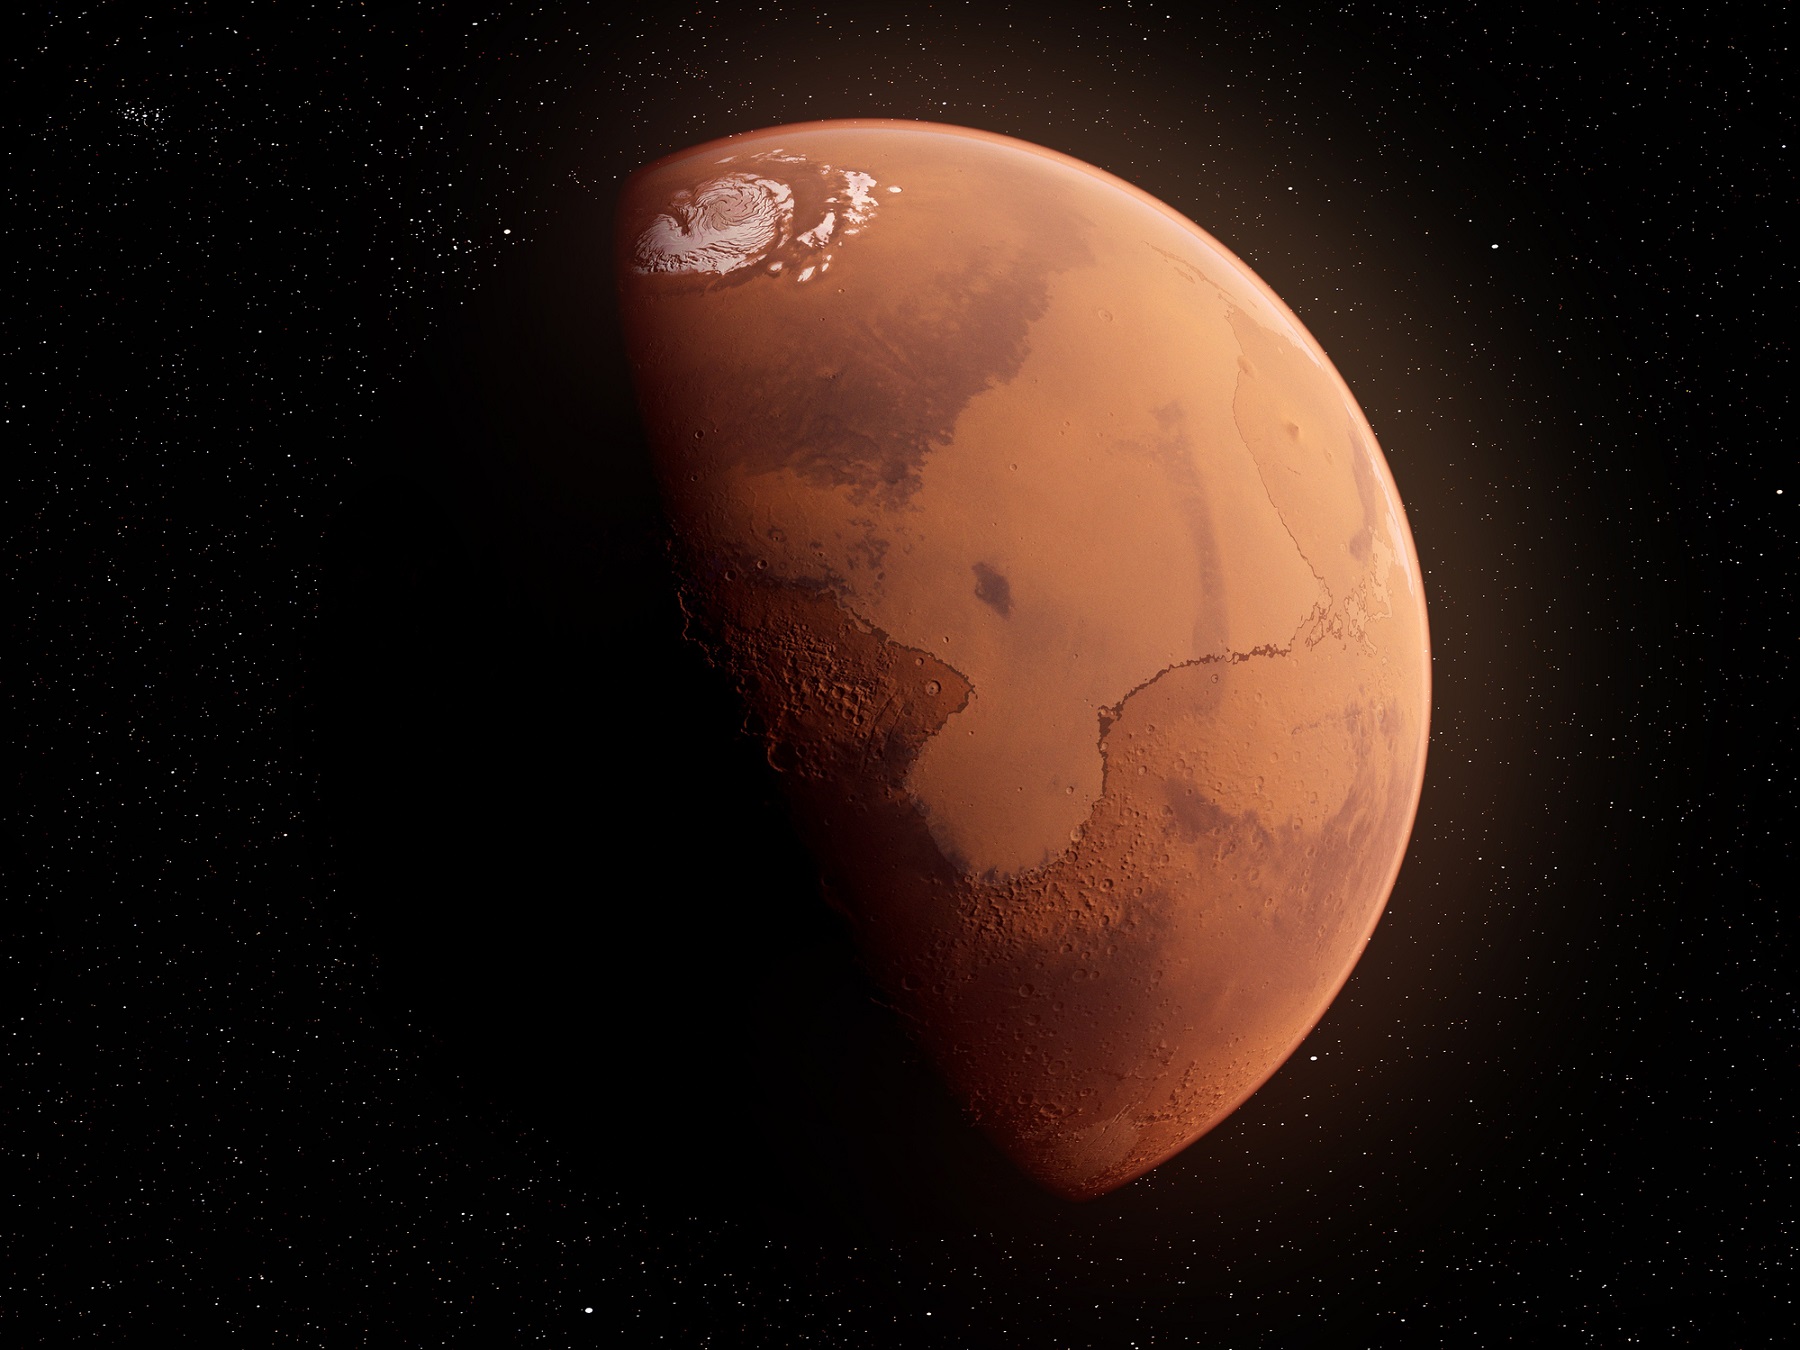 Egy friss tanulmány szerint lehet, hogy már meg is találtuk a marsi életet